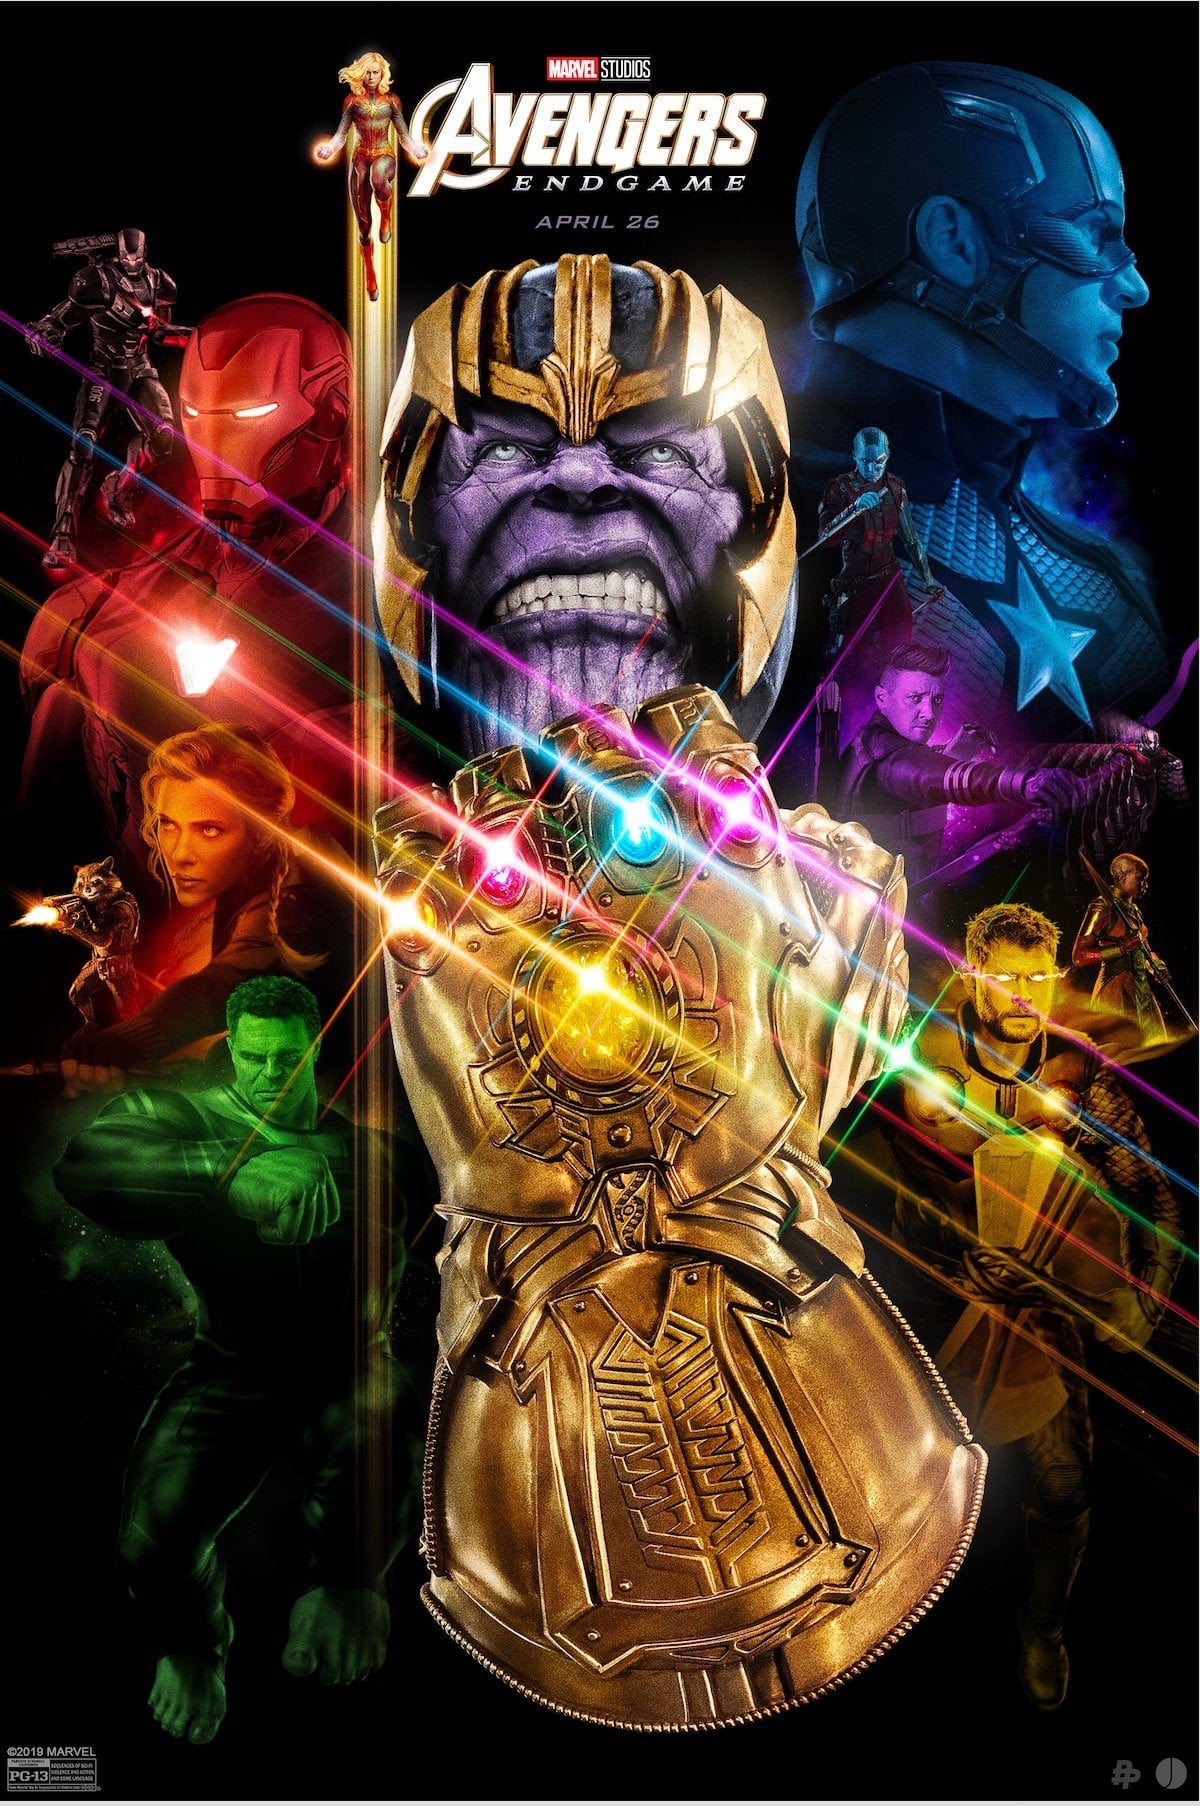 Plakat von "Avengers: Endgame"